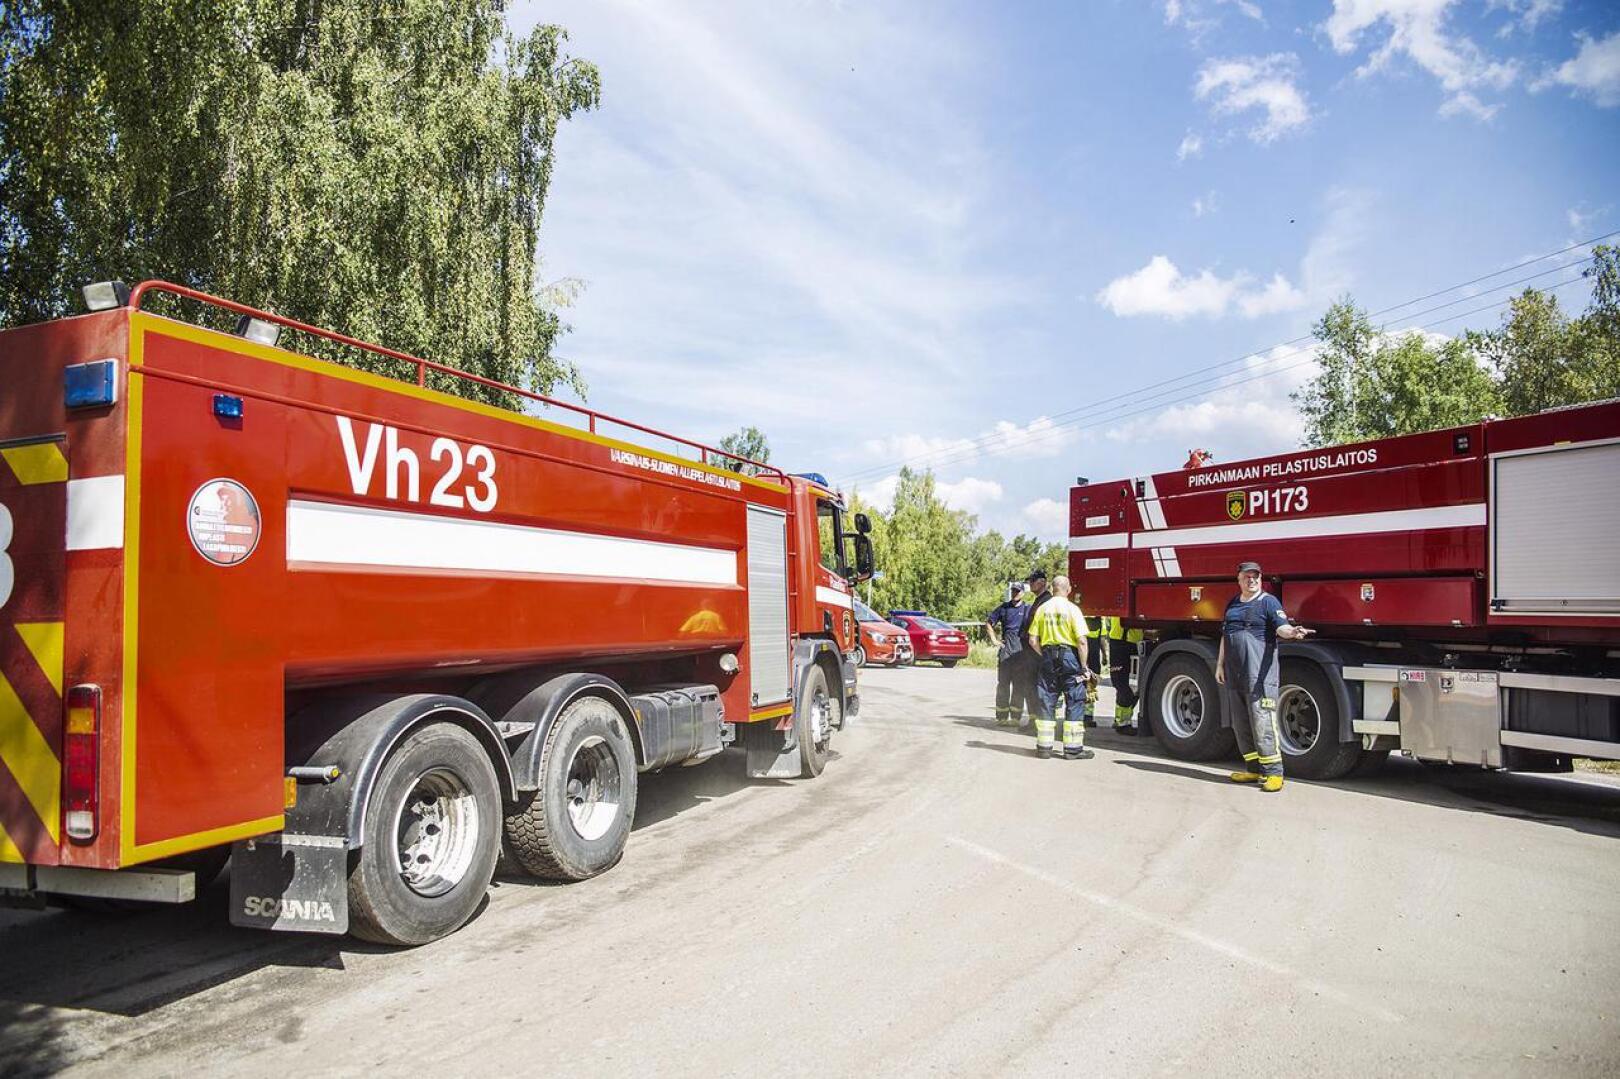 Pyhärannan sammutustöissä auttavat Varsinais-Suomen pelastuslaitoksen ja vapaapalokuntalaisten lisäksi myös naapuripelastuslaitokset, kuten Pirkanmaan pelastuslaitos.